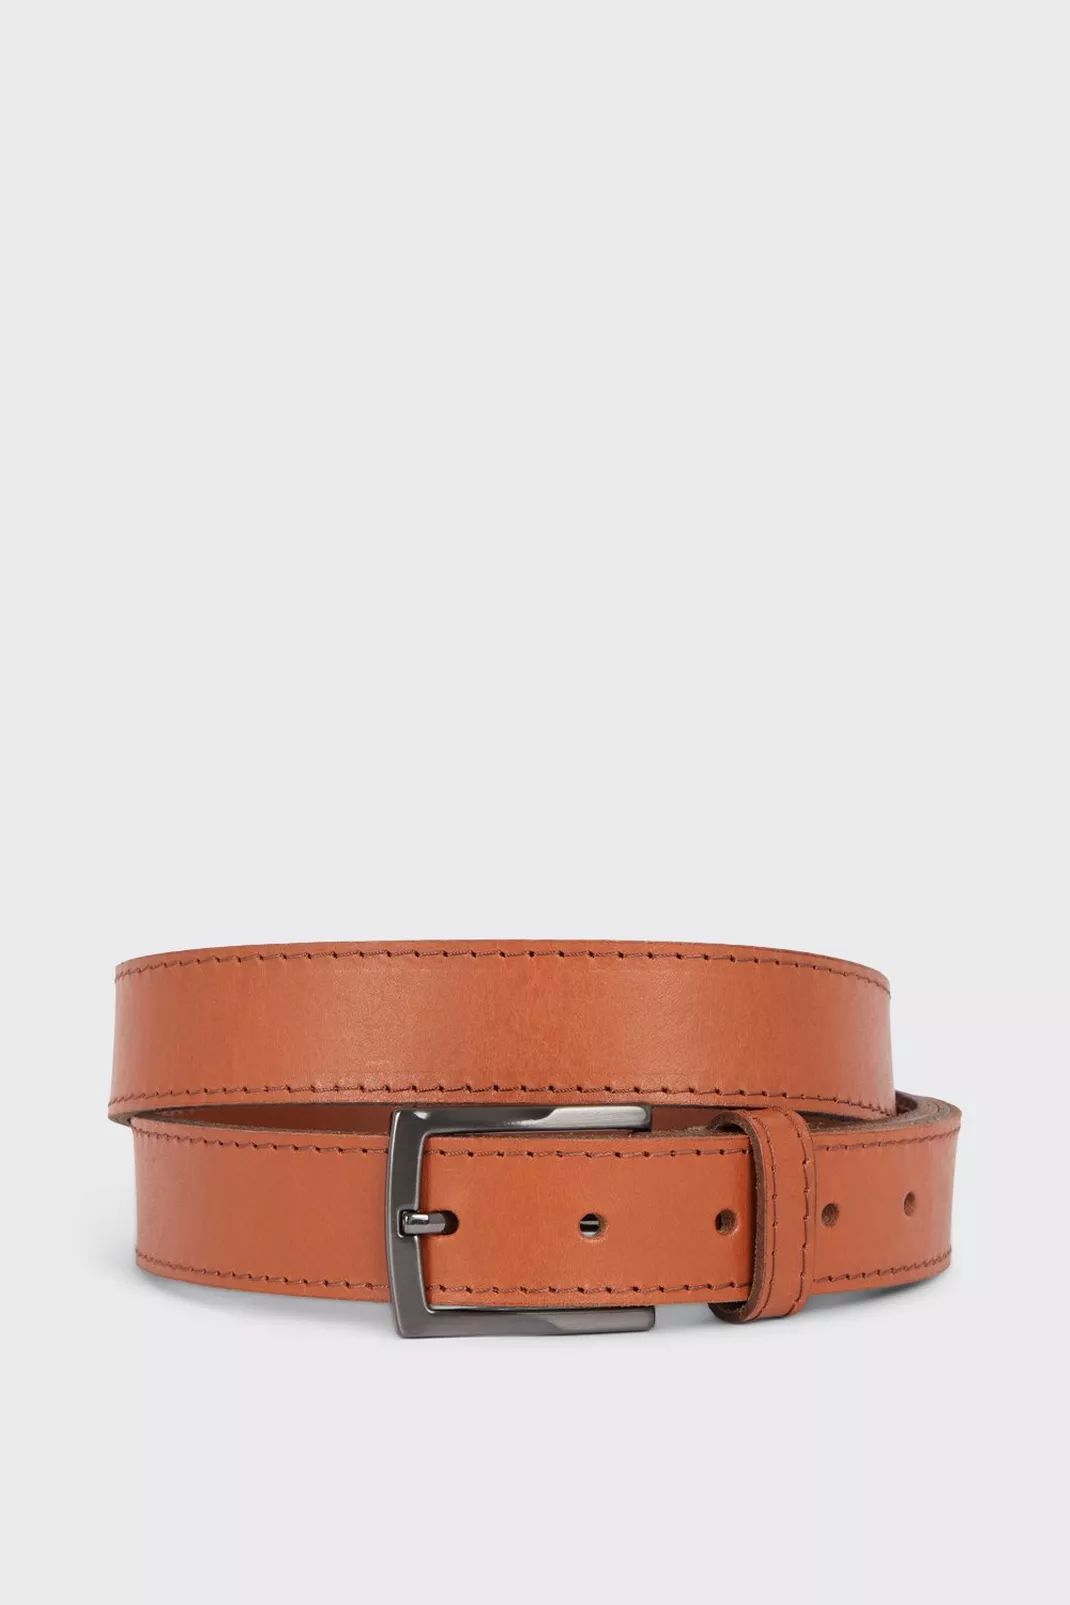 Buy Tan Leather Feathered Edge Belt for GBP 25.00 | Burton UK | Burton UK